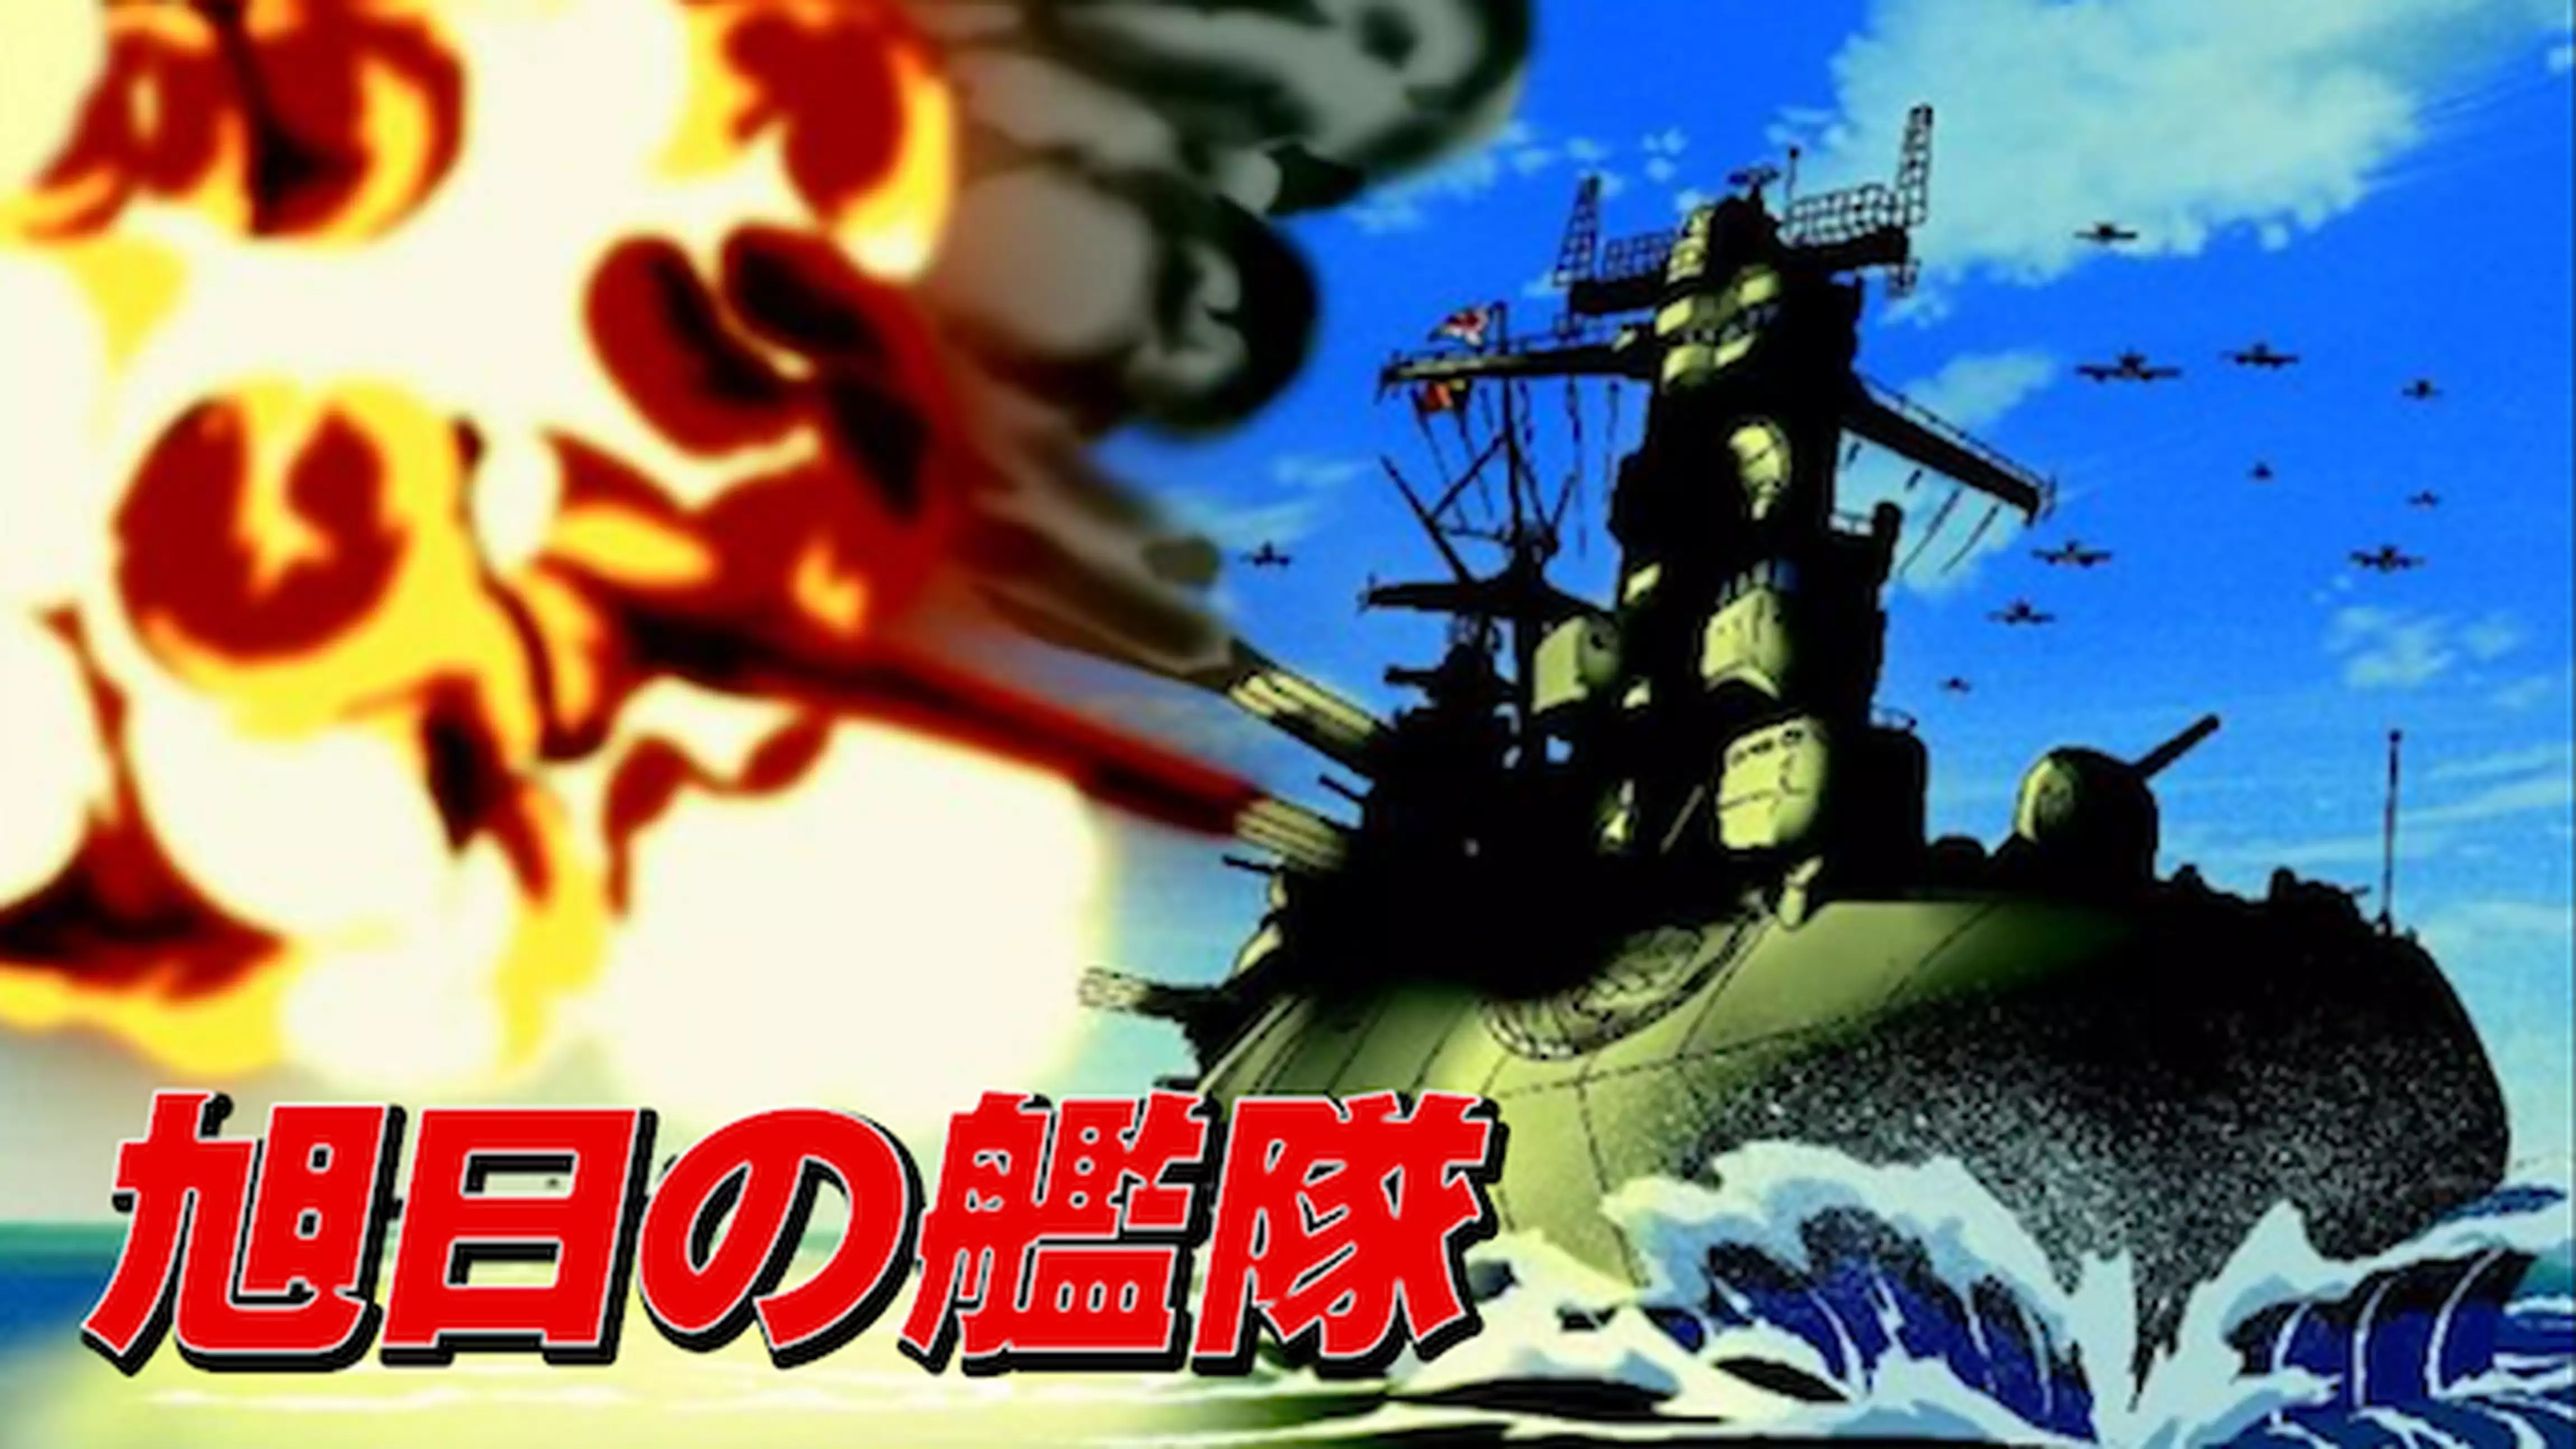 超戦艦日本武尊出撃